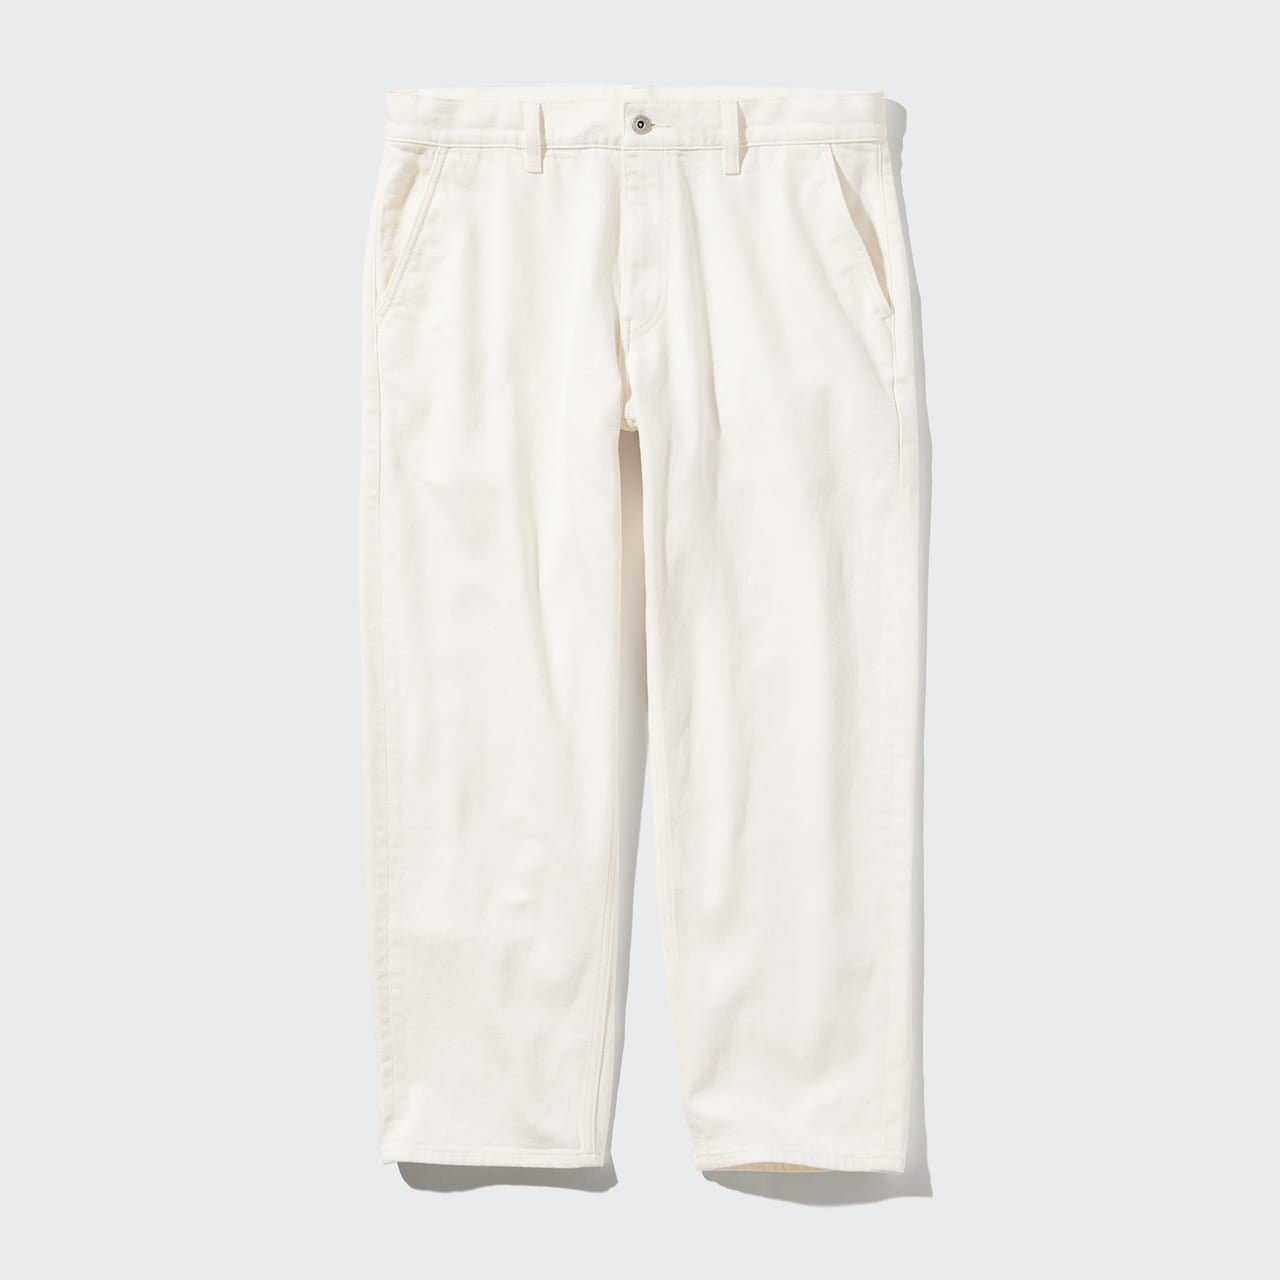 ユニクロの24年春の新作パンツ「リラックスアンクルジーンズ」のホワイト